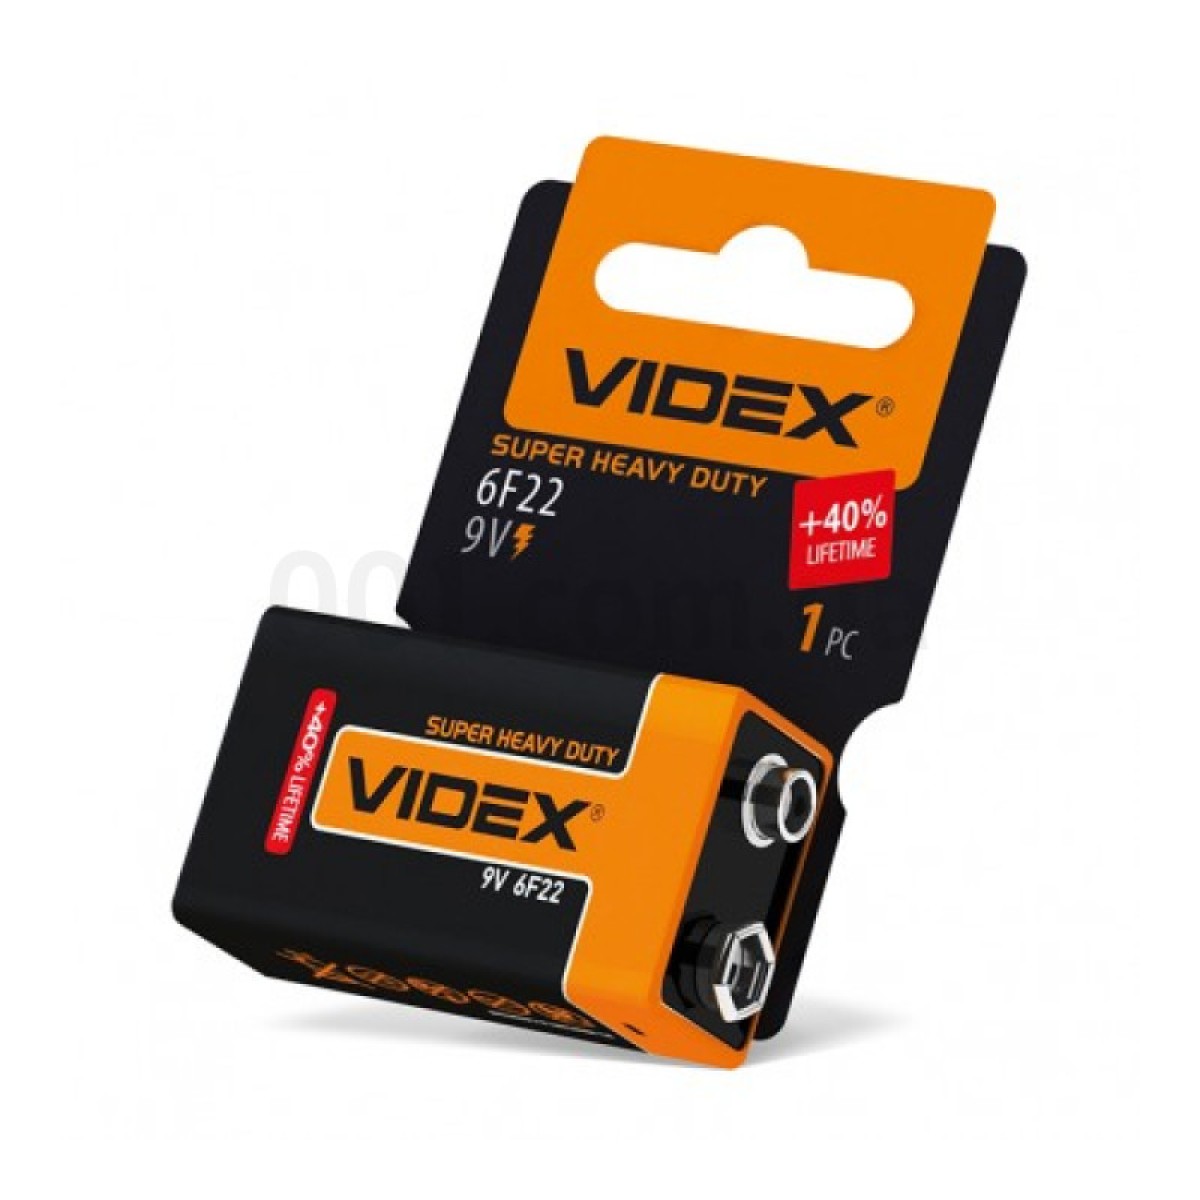 Батарейка солевая 6F22/9V (Крона) упаковка shrink card, VIDEX 256_256.jpg